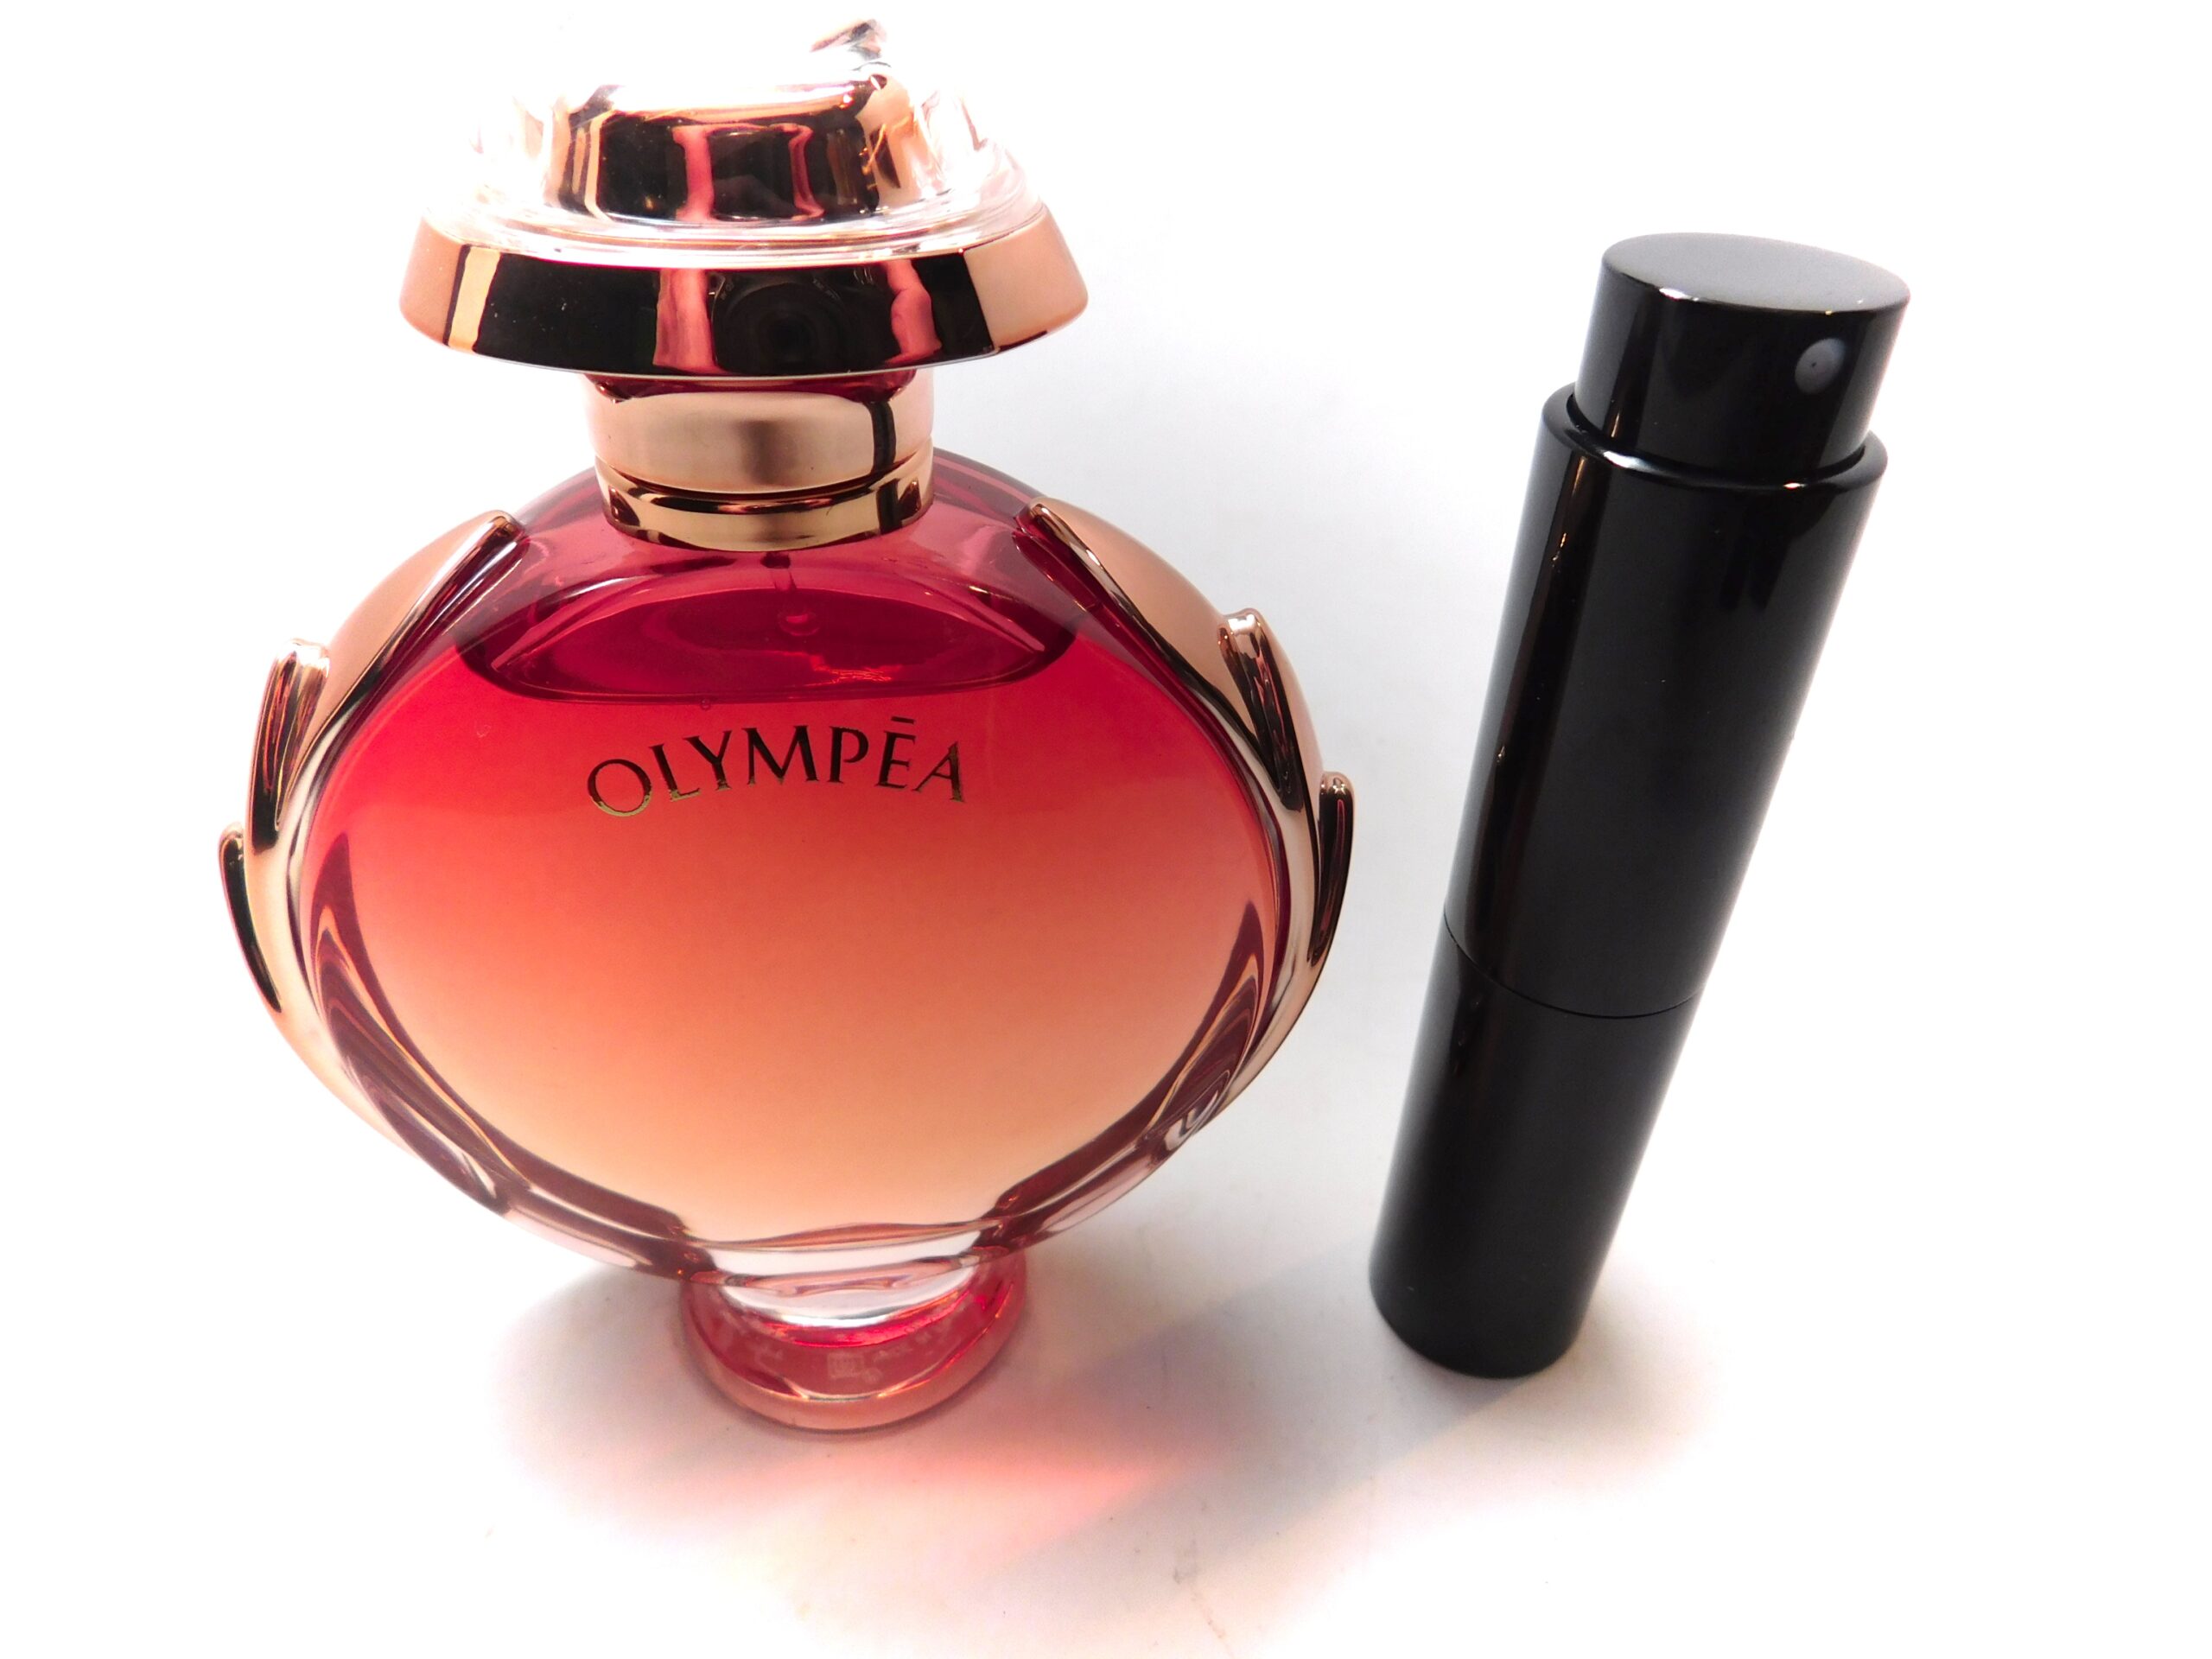 versace olympea perfume